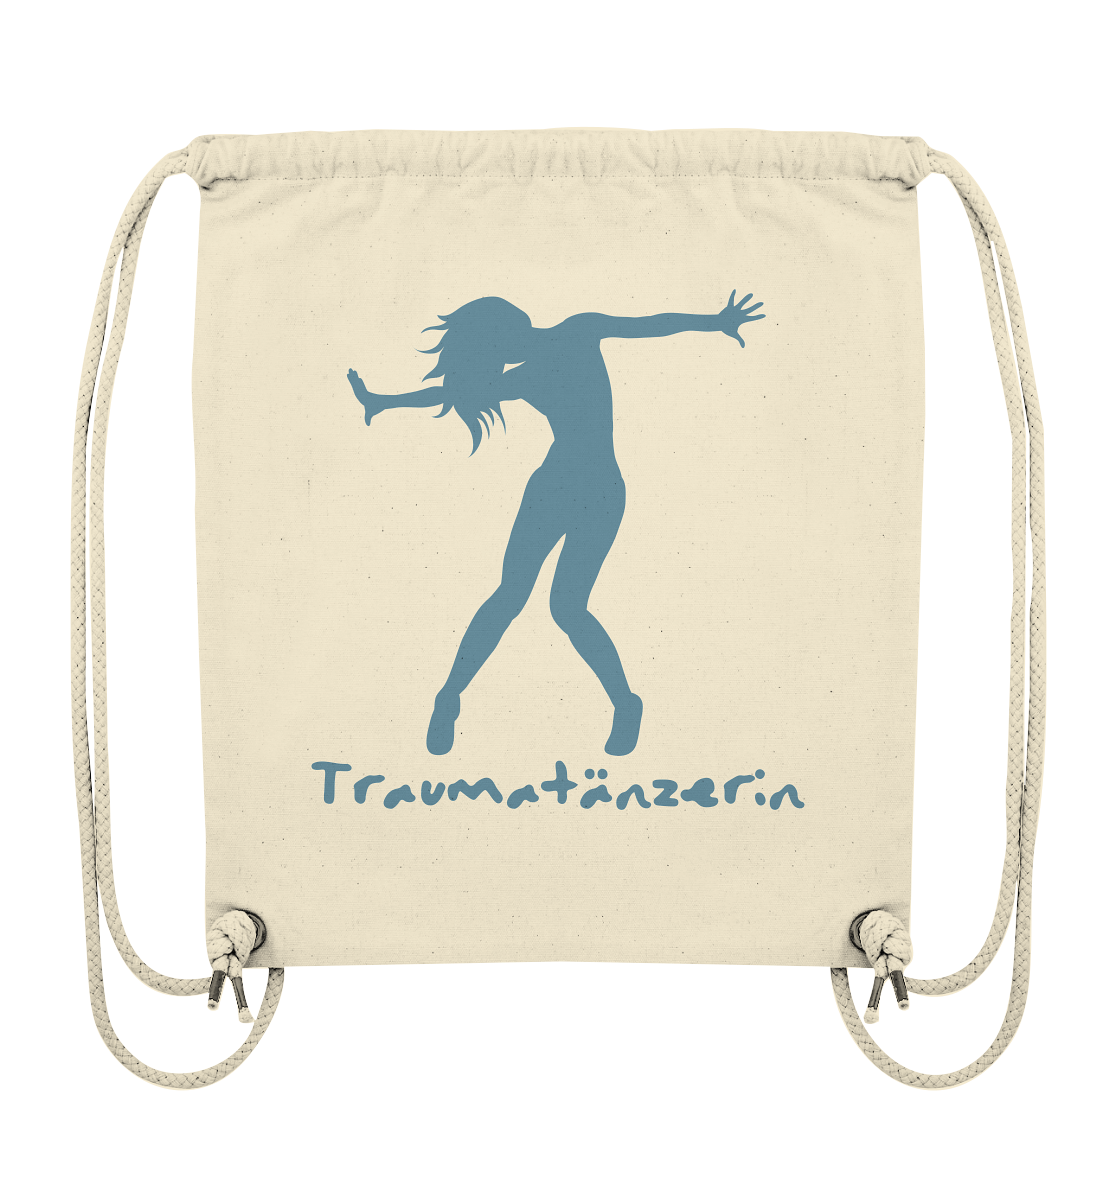 Ein Traumatänzerin - nachhaltiger Baumwoll-Turnbeutel mit Spruch von Artbookings/Shirtigo, auf dem das Wort „Traumanissia“ steht, ist ein Must-Have-Accessoire.